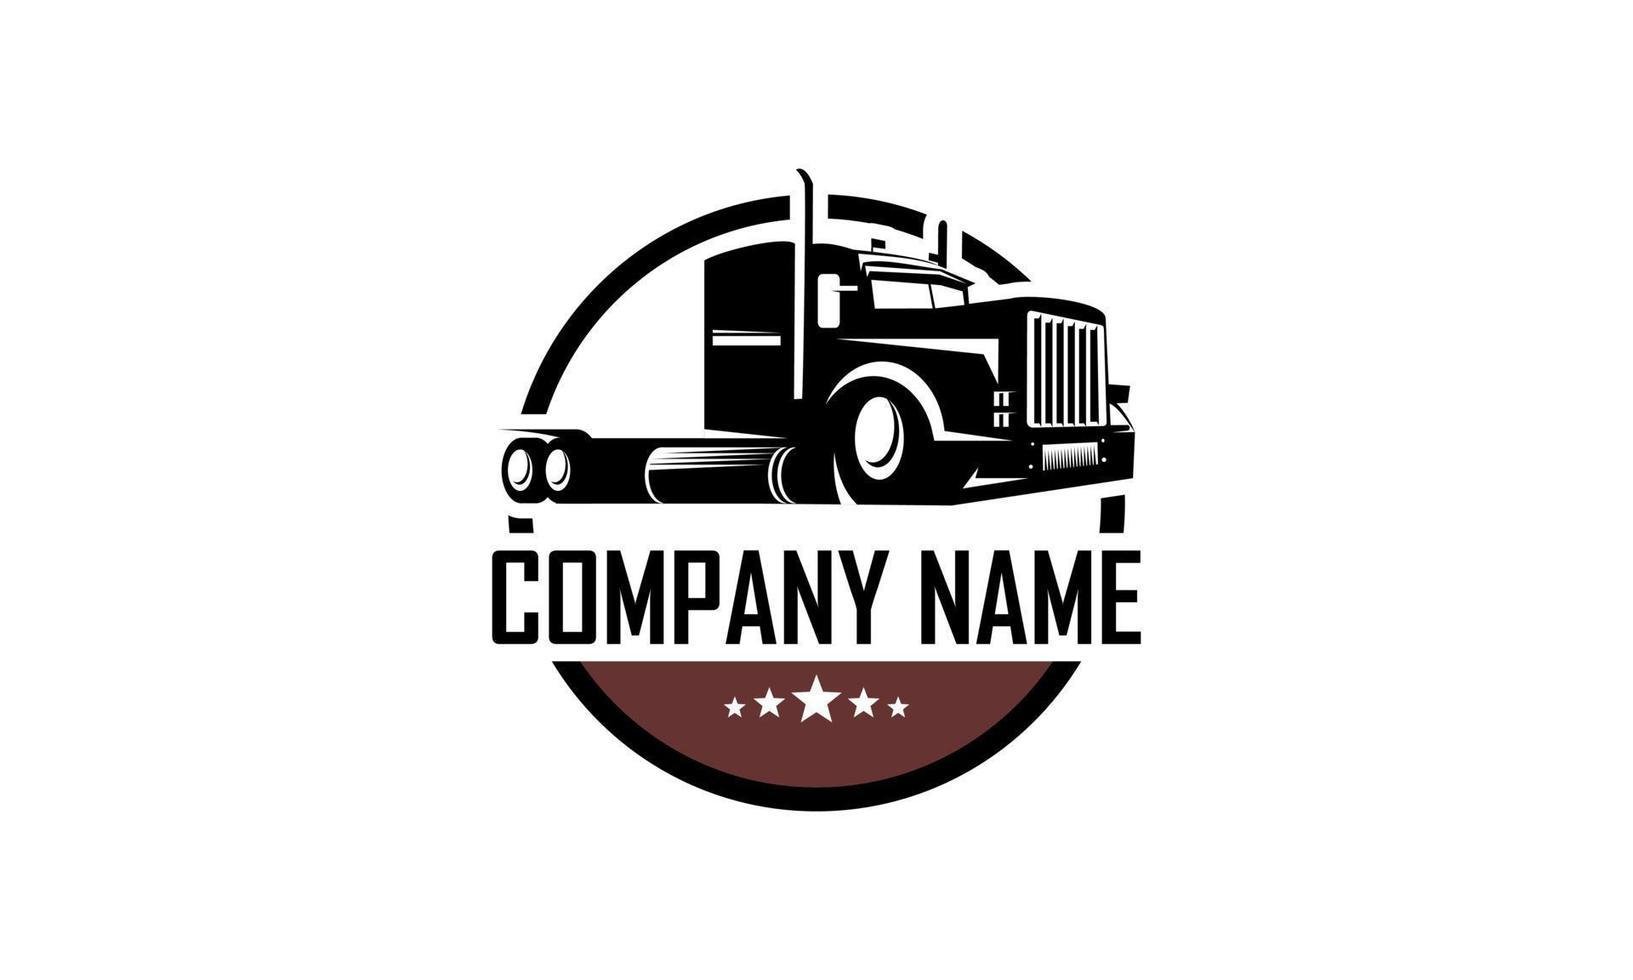 Trucking company logo. Emblem logo concept vector